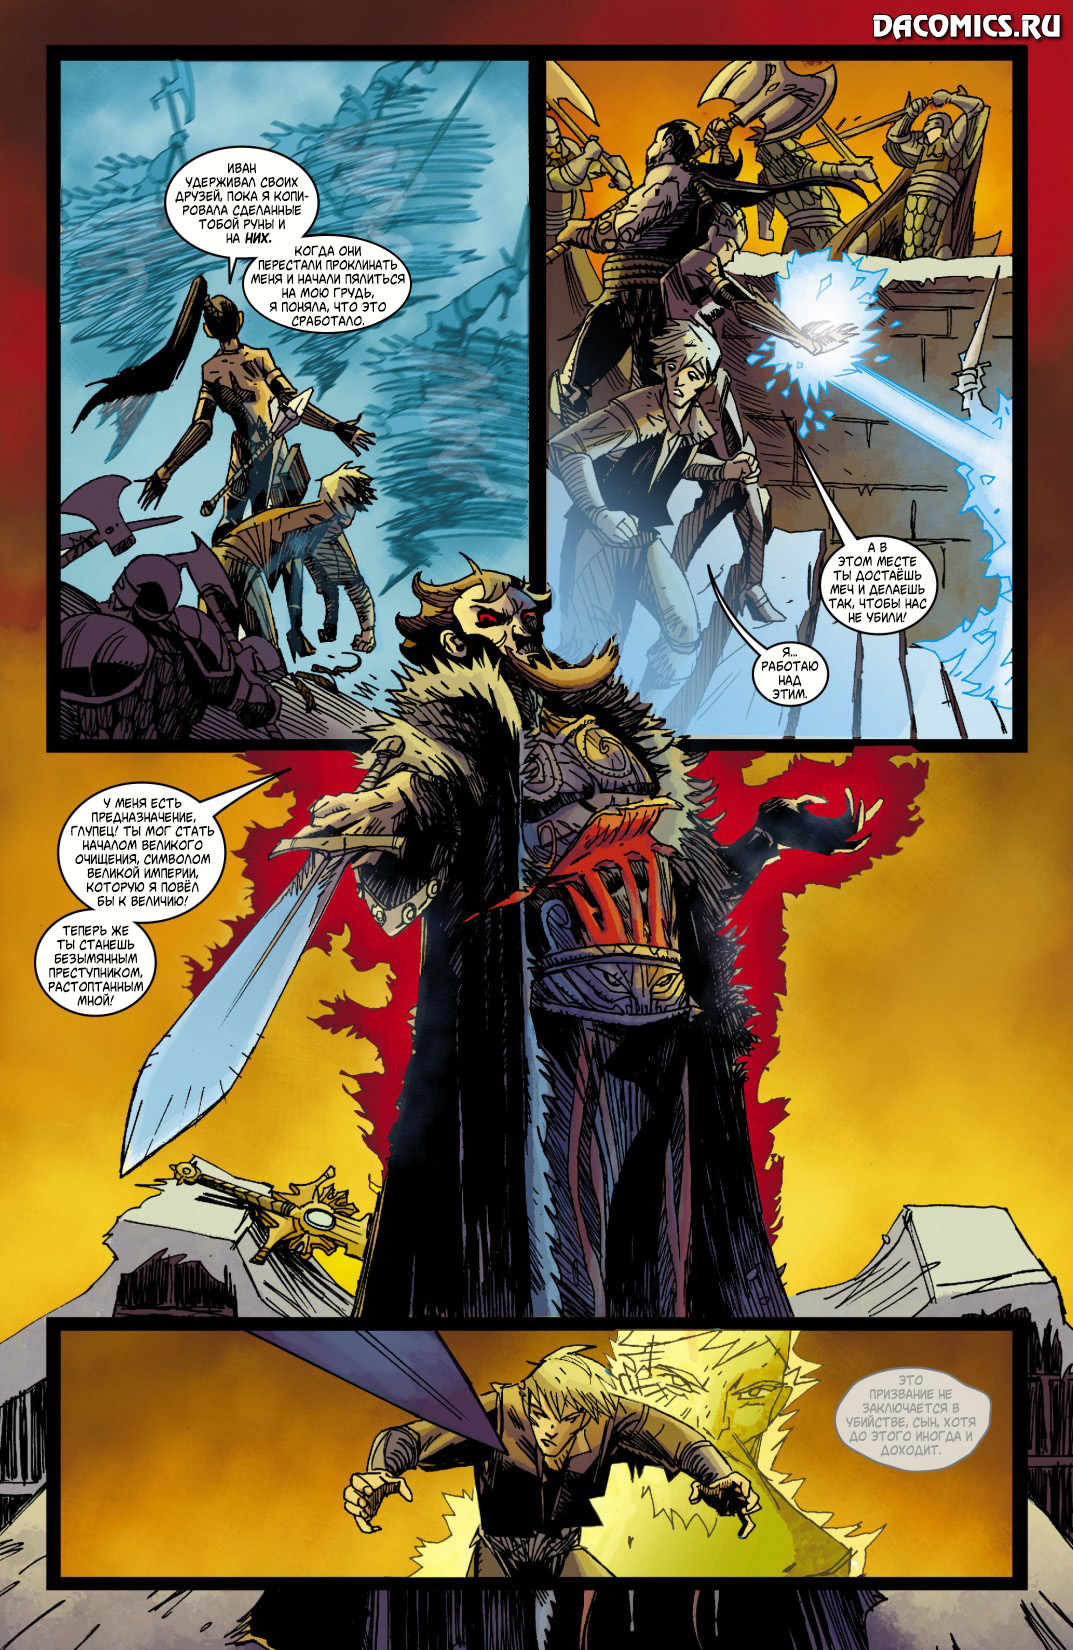 Sword of justice. Диабло меч правосудия. Карающий меч правосудия. Меч справедливости. Diablo 3 Comics.